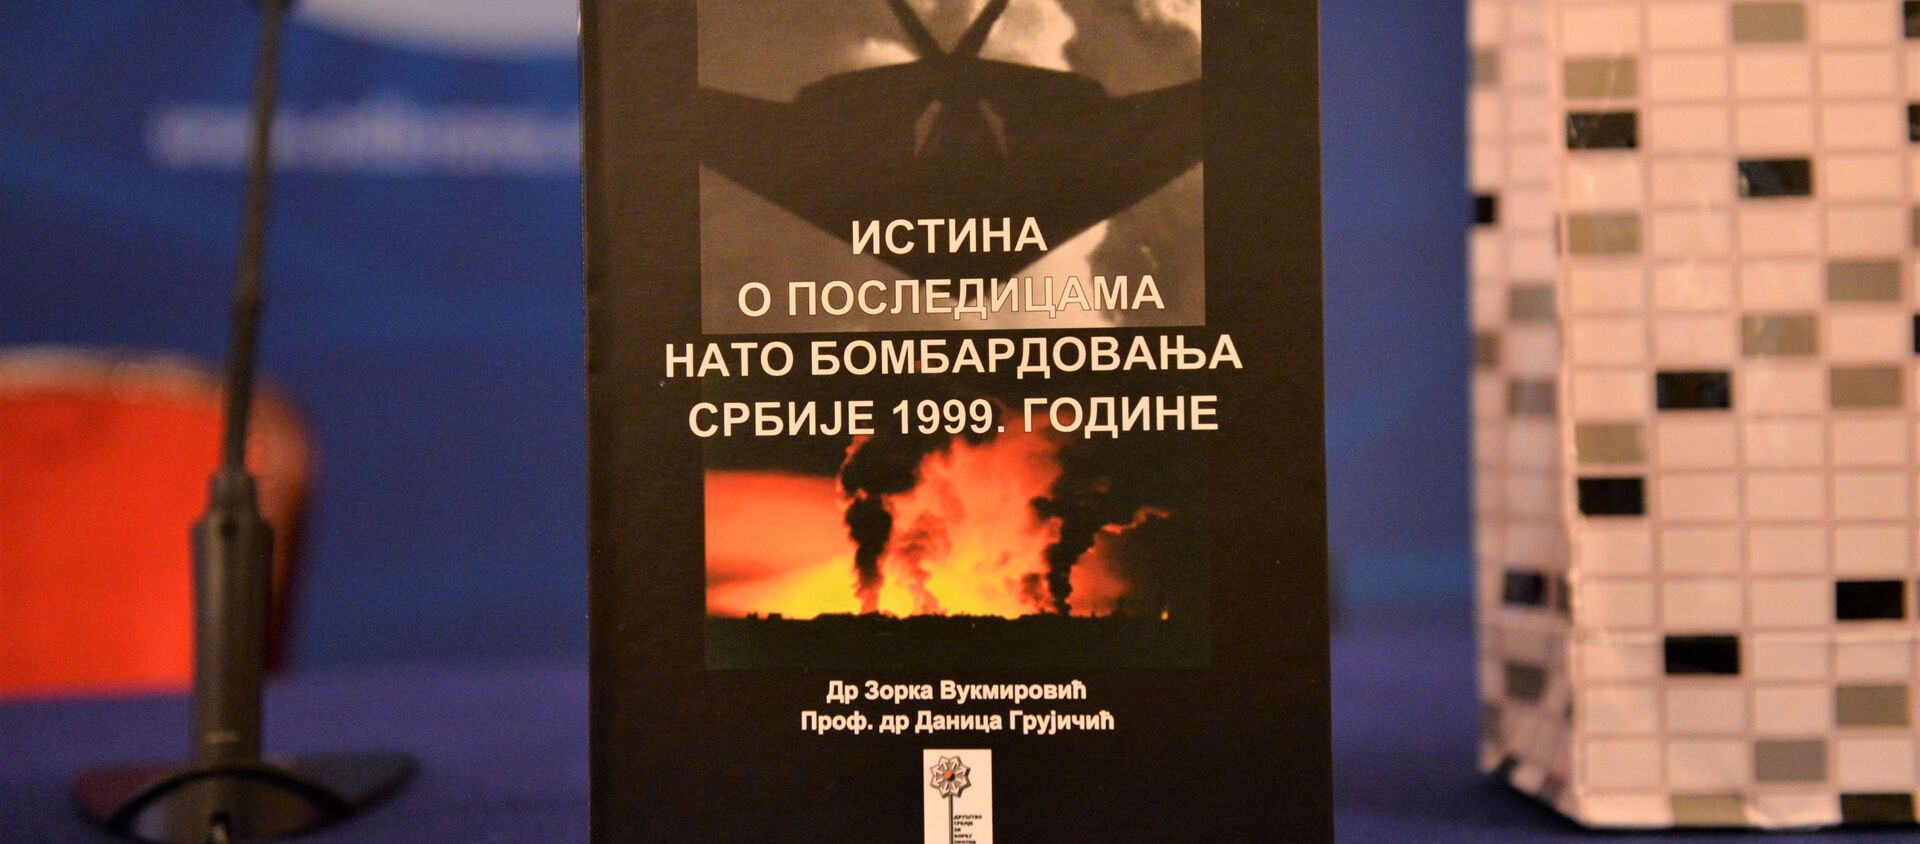 Представљање монографије Истина о последицама НАТО бомбардовања Србије 1999. - Sputnik Србија, 1920, 29.06.2021